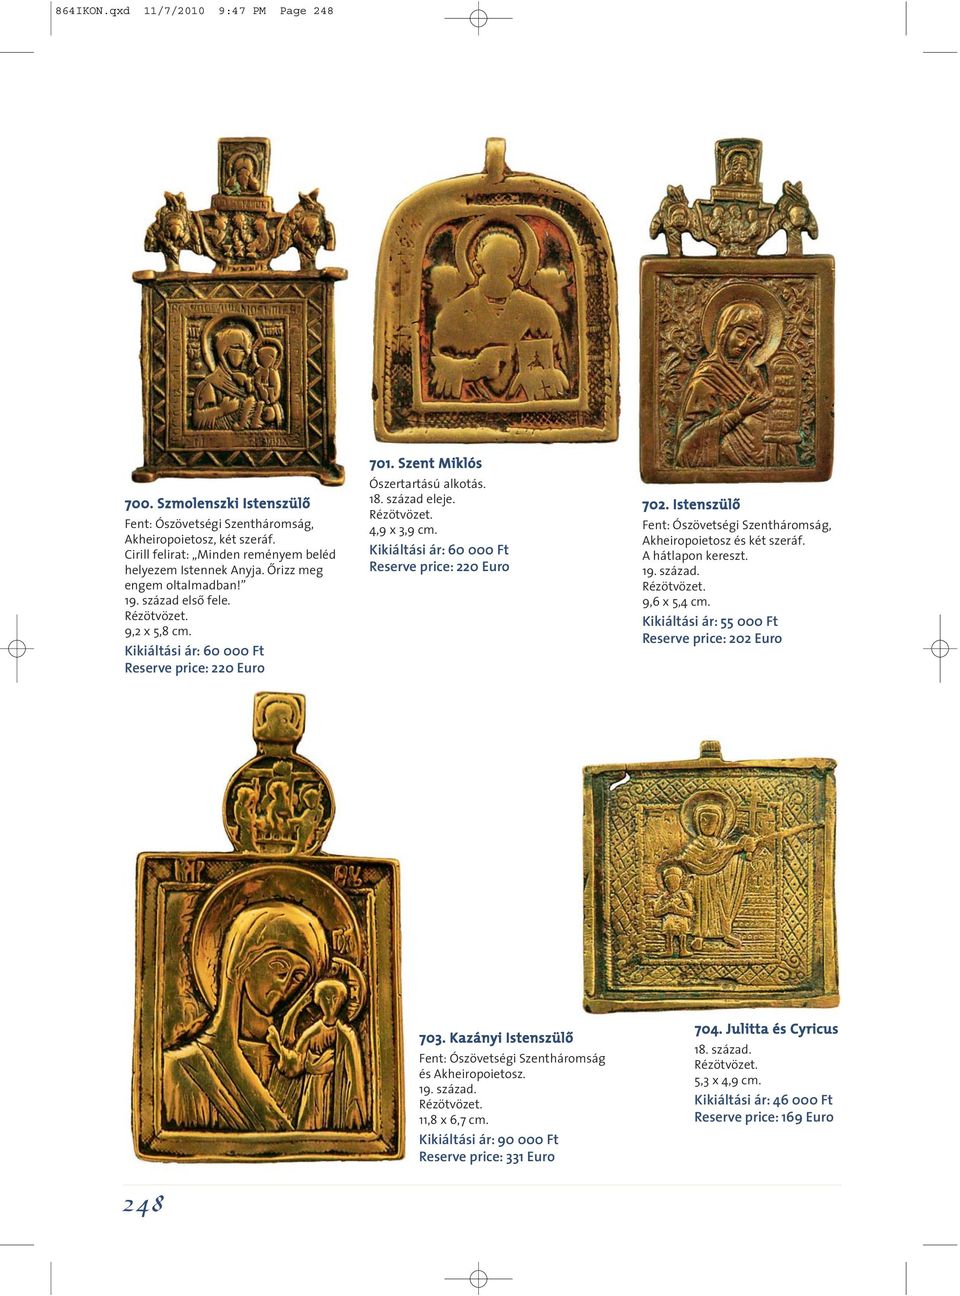 Kikiáltási ár: 60 000 Ft Reserve price: 220 Euro 702. Istenszülô Fent: Ószövetségi Szentháromság, Akheiropoietosz és két szeráf. A hátlapon kereszt. 9,6 x 5,4 cm.